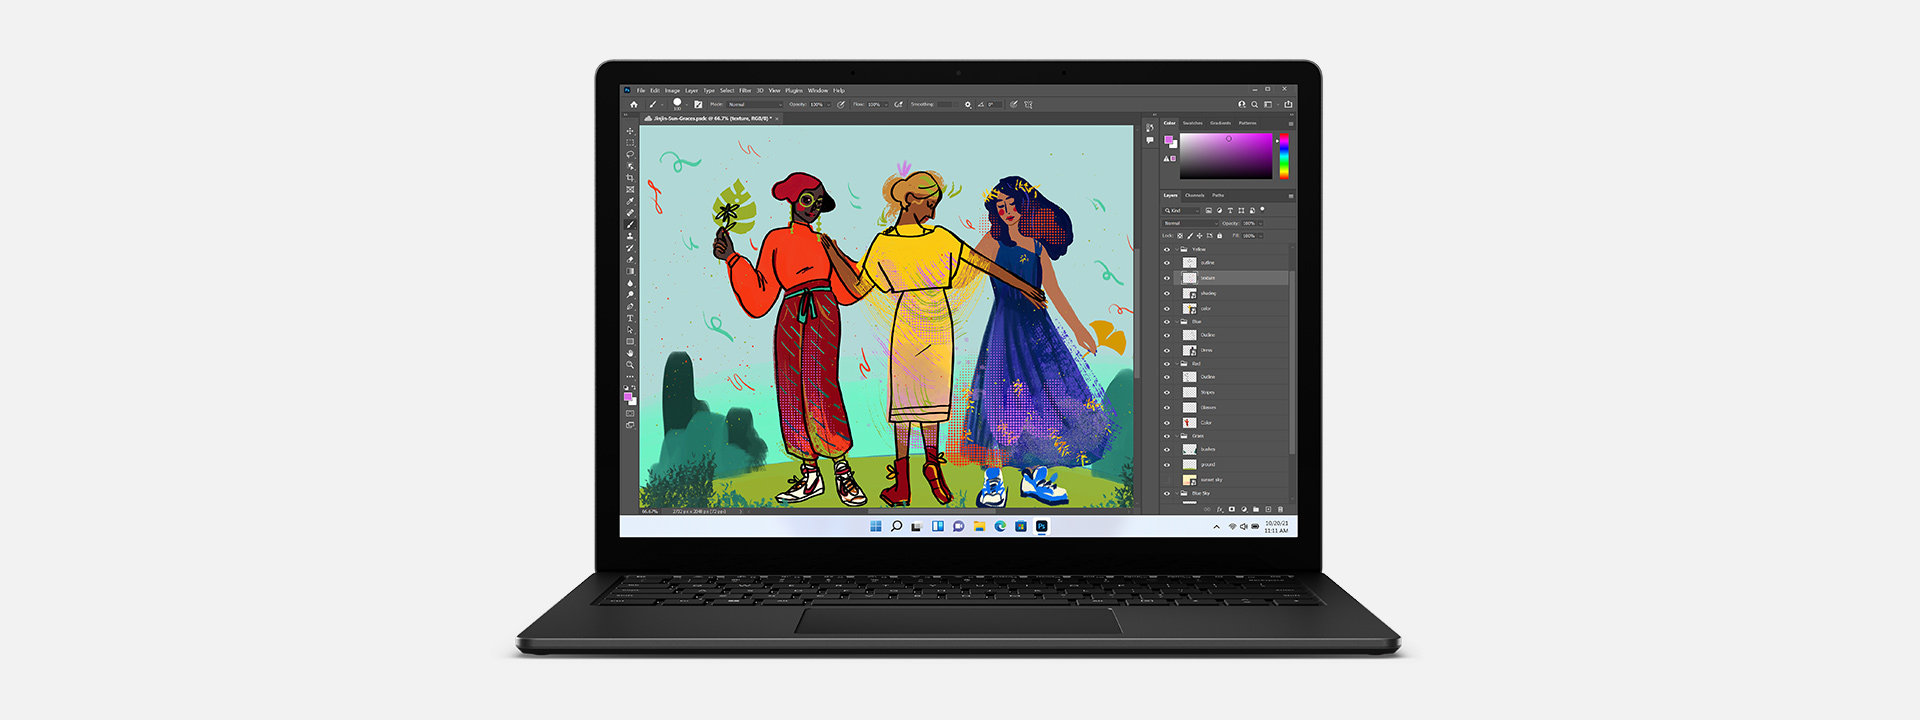 Surface Laptop 4 與 Adobe Photoshop 中顯示的圖稿。